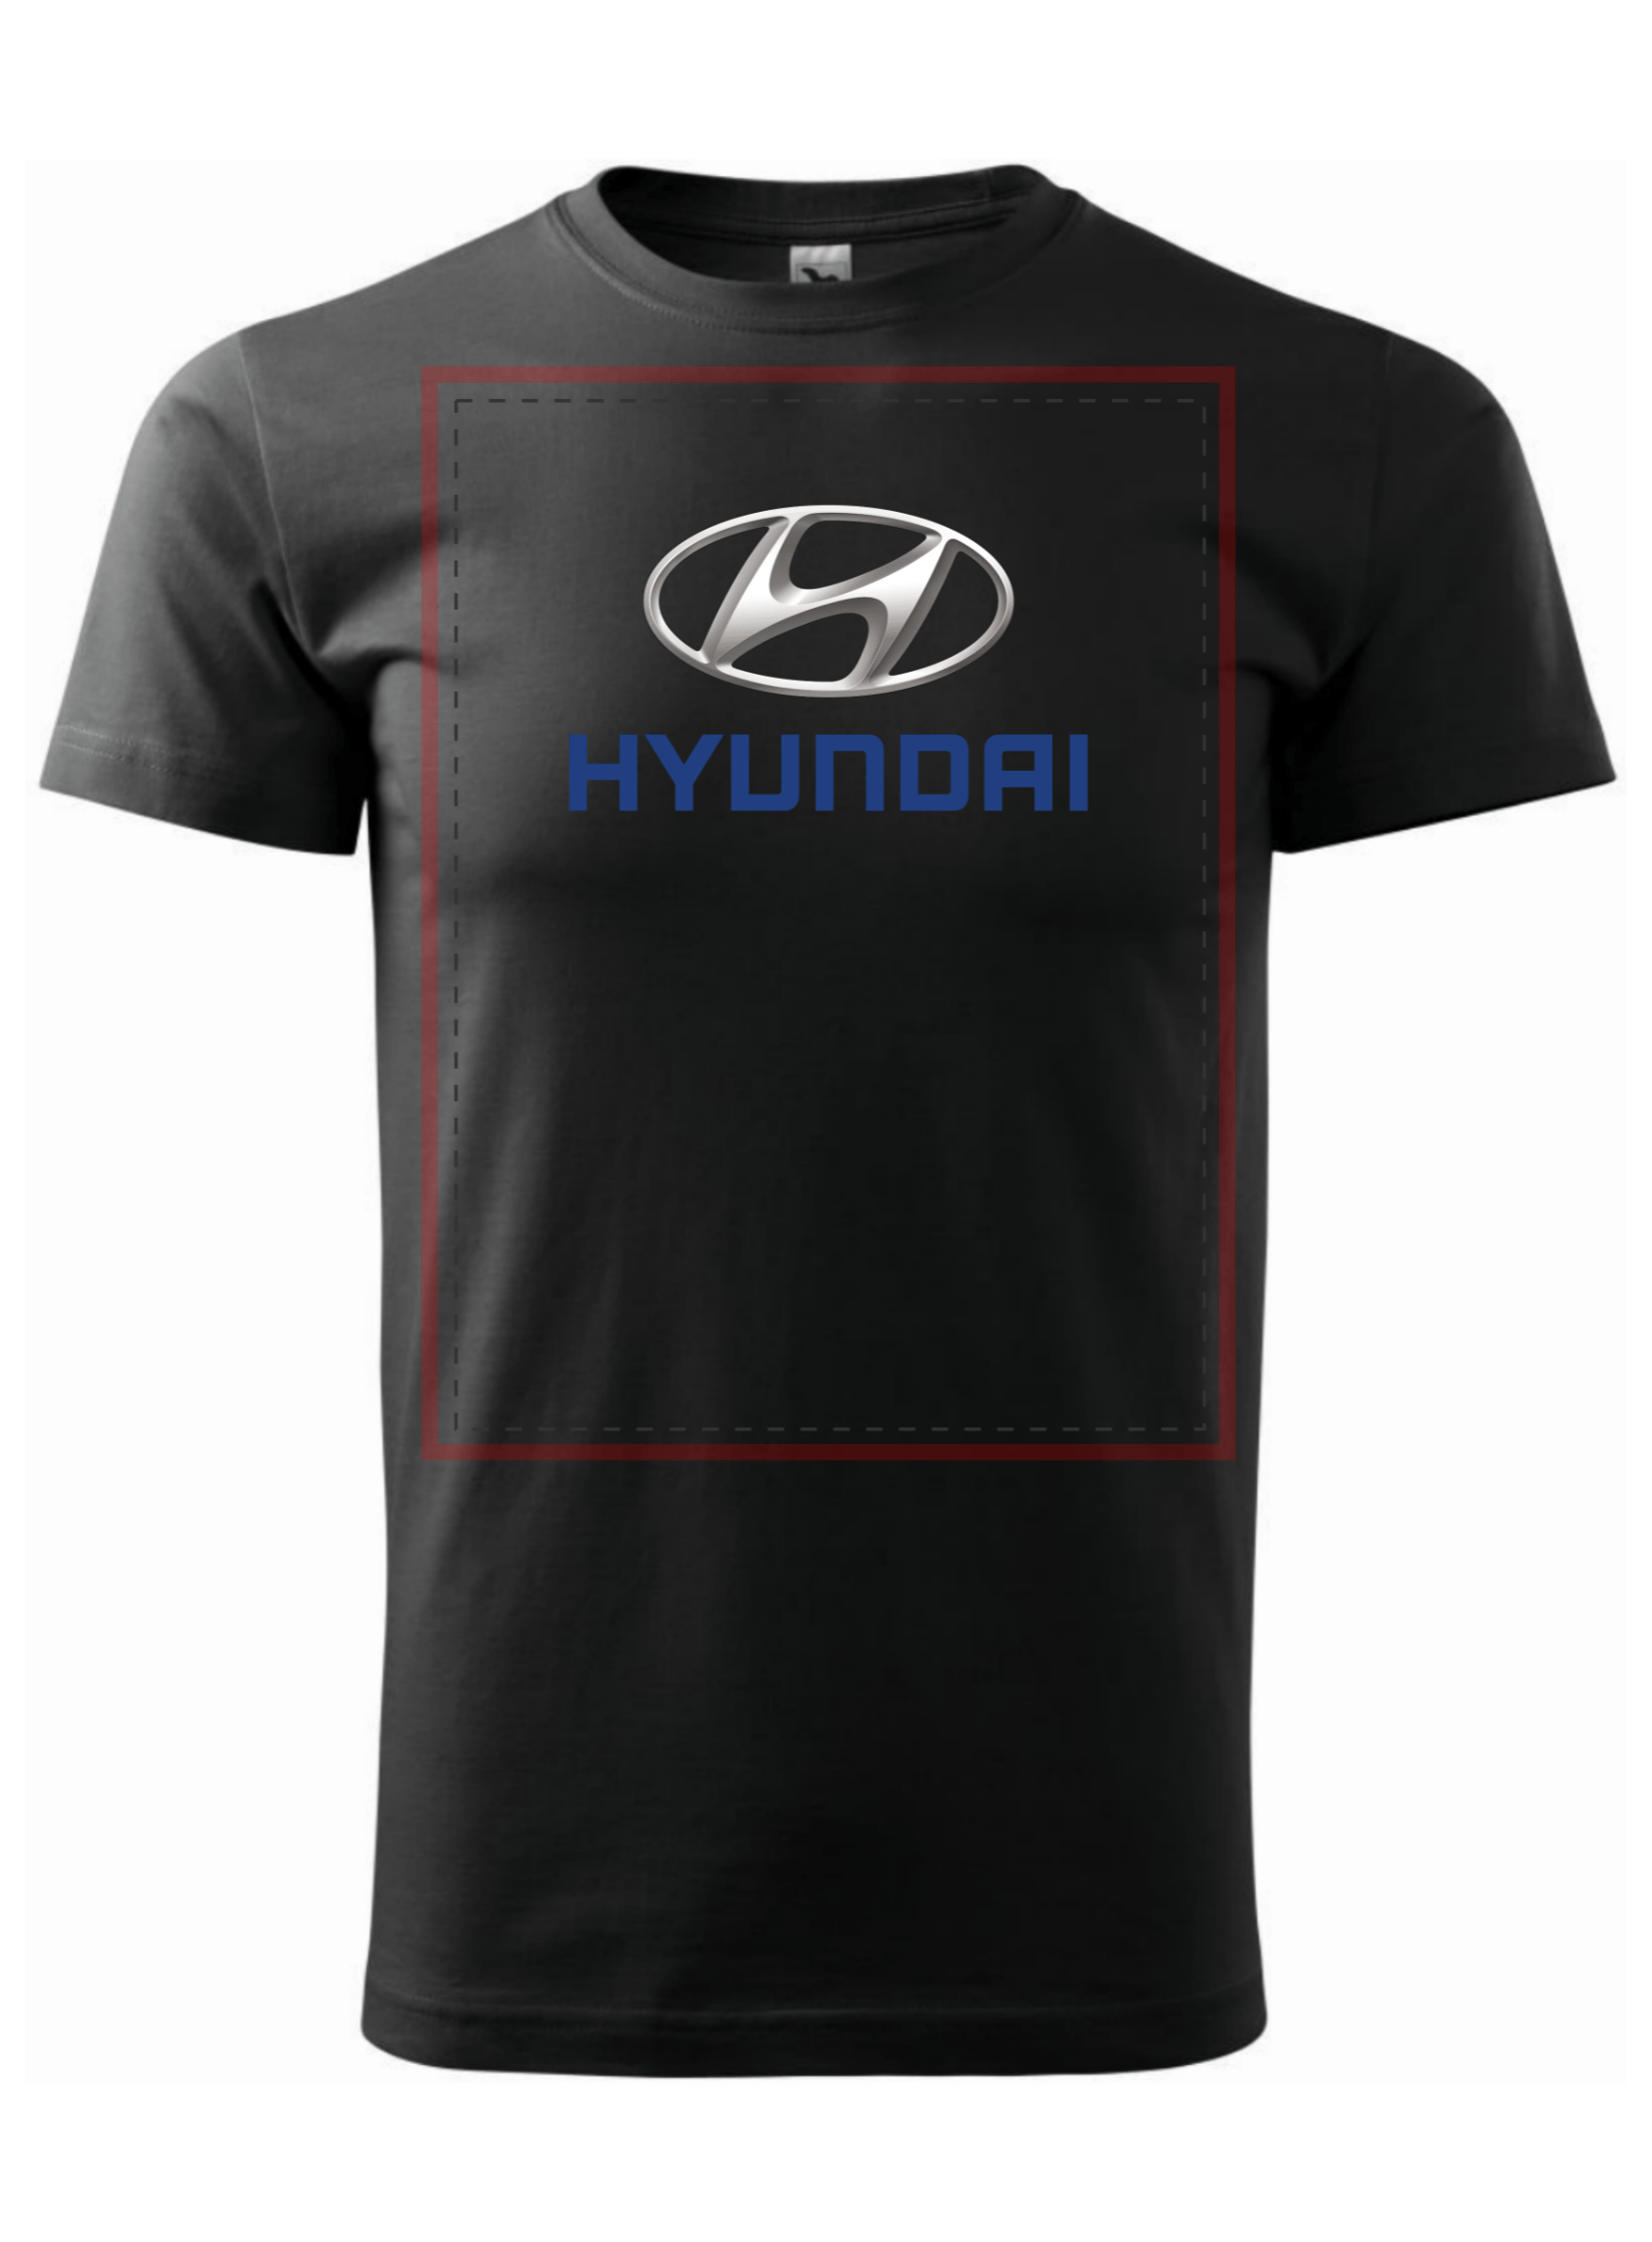 Pánské tričko s potiskem značky Huyndai